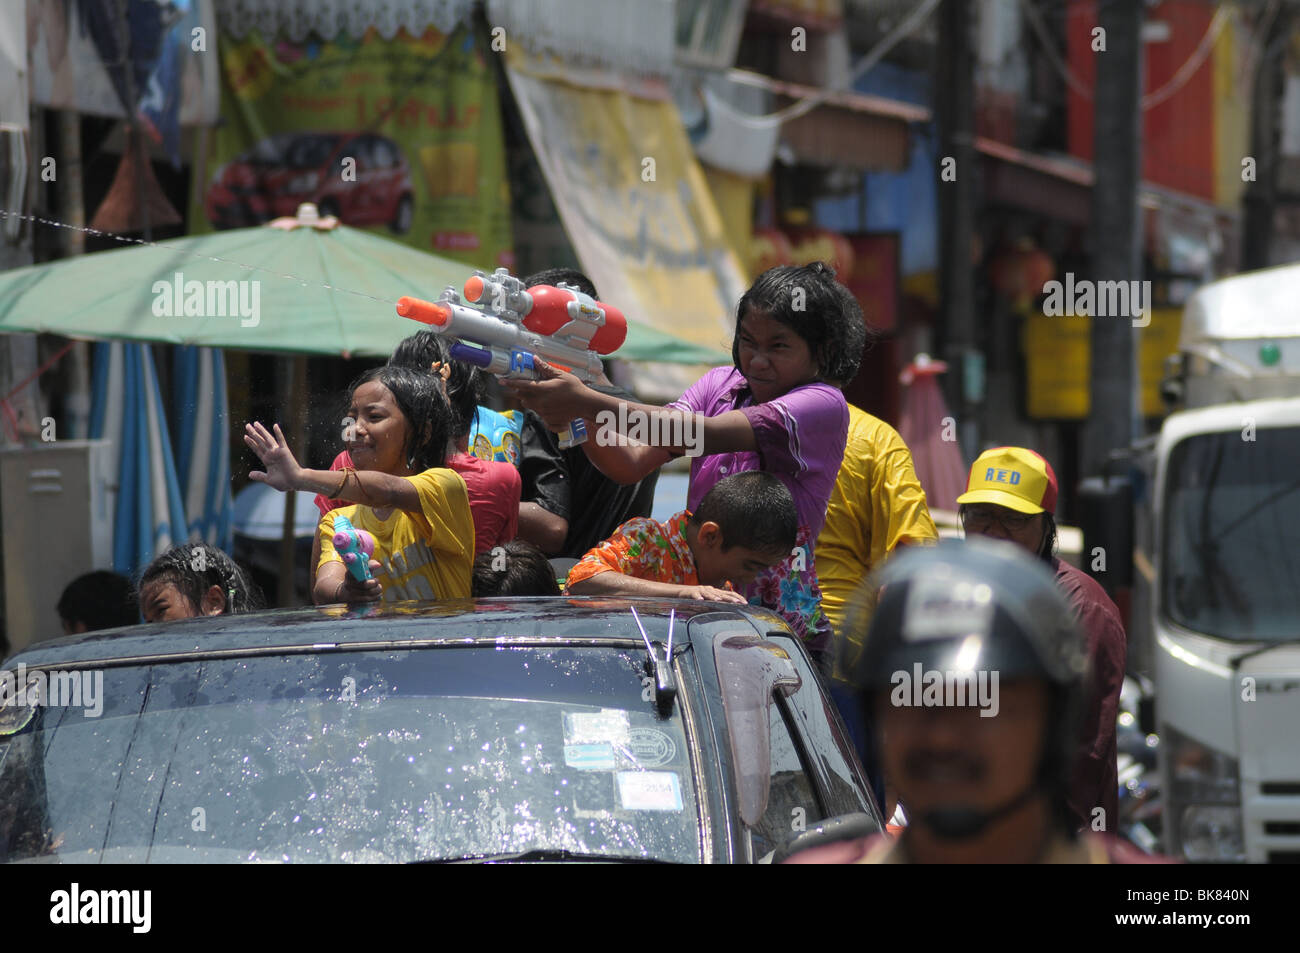 Tir fille pistolet à eau à l'arrière du camion pendant le Festival de Songkran Thaïlandais Banque D'Images